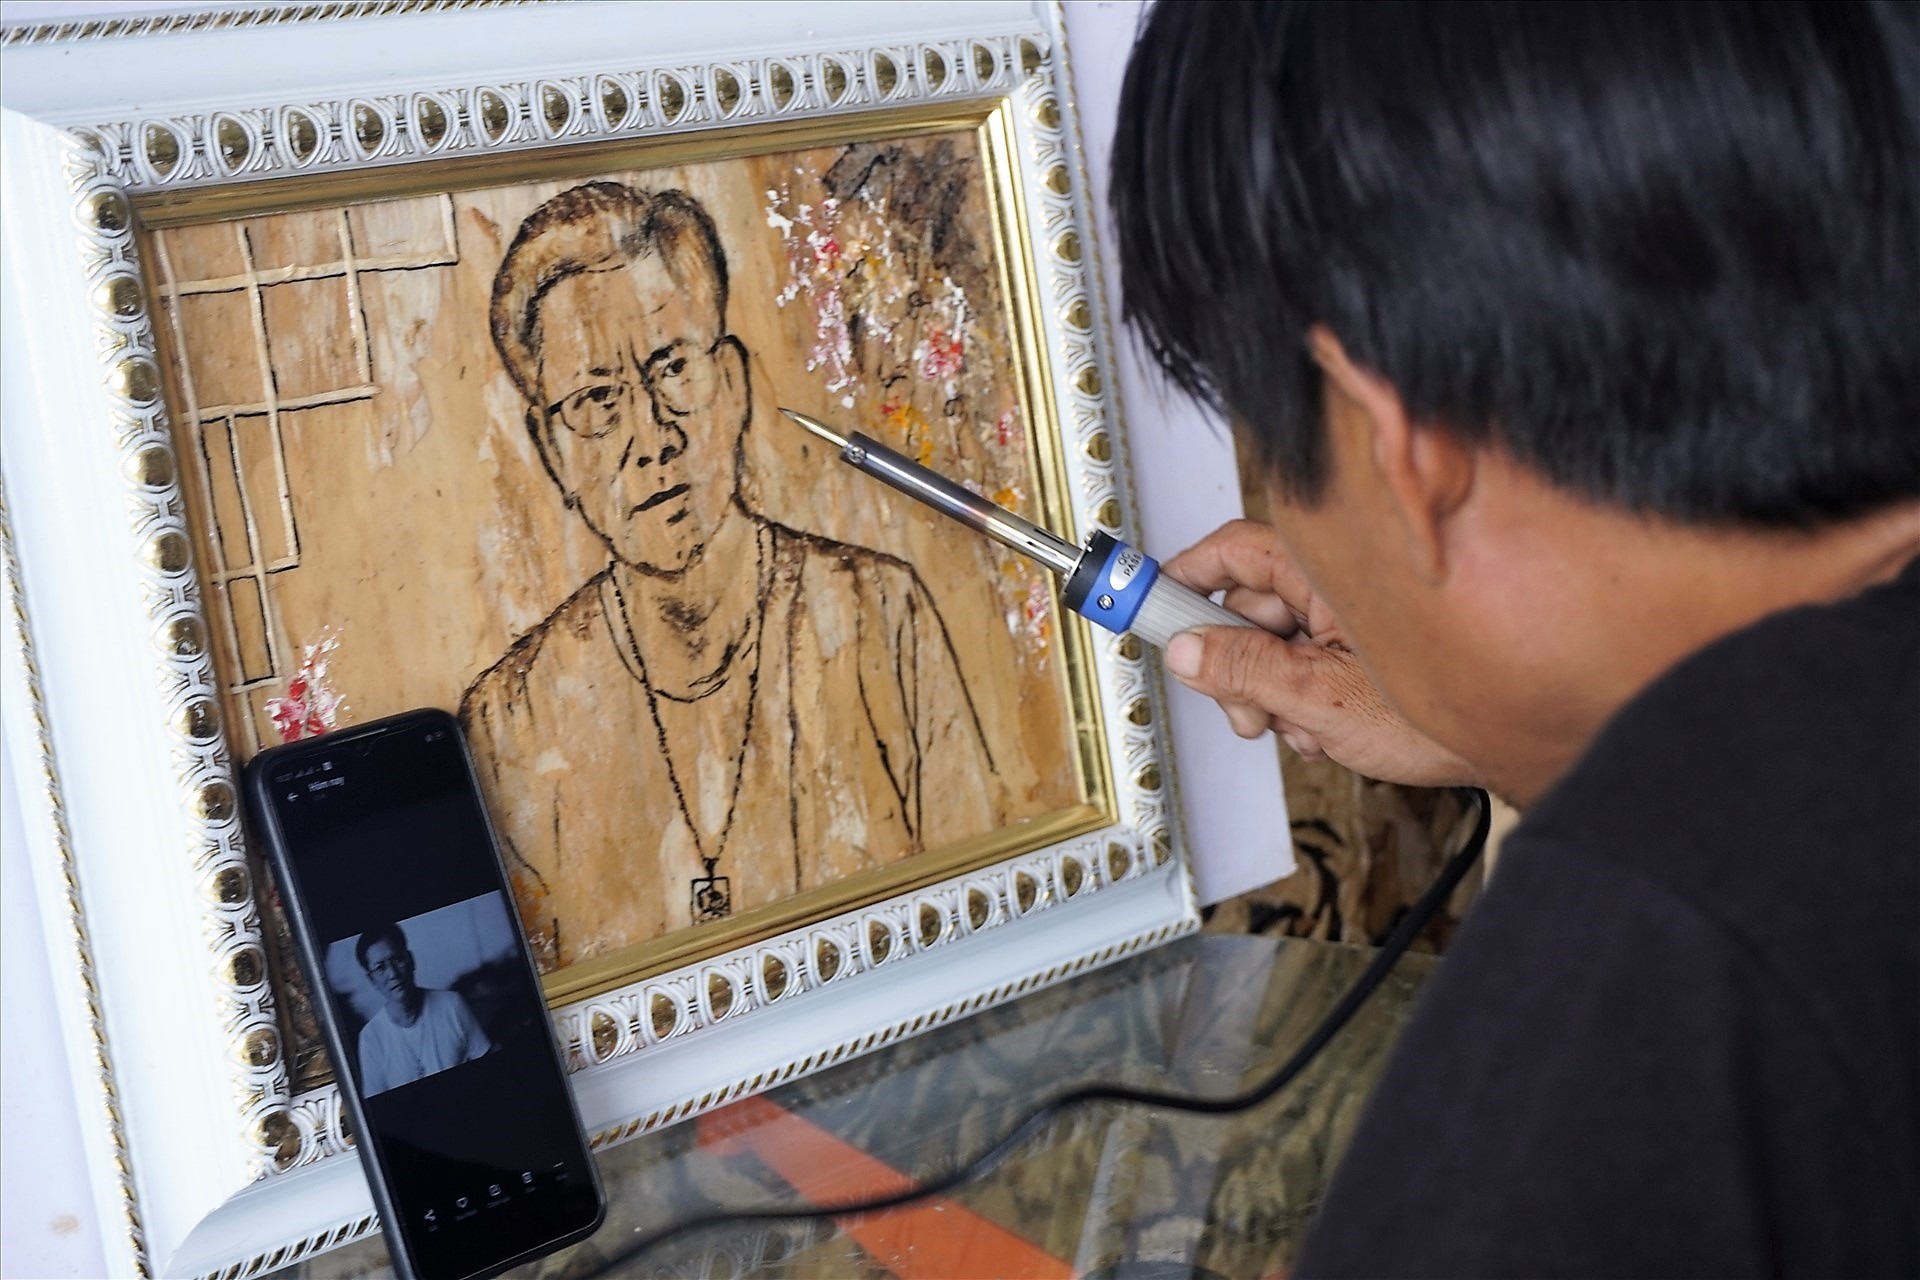 Tranh vỏ tràm là một trong những loại tranh truyền thống của Việt Nam, được sản xuất bởi những nghệ nhân tài ba. Hãy cùng tìm hiểu về công nghệ sản xuất và những tác phẩm nghệ thuật đẹp mắt, tinh tế của Tranh vỏ tràm.